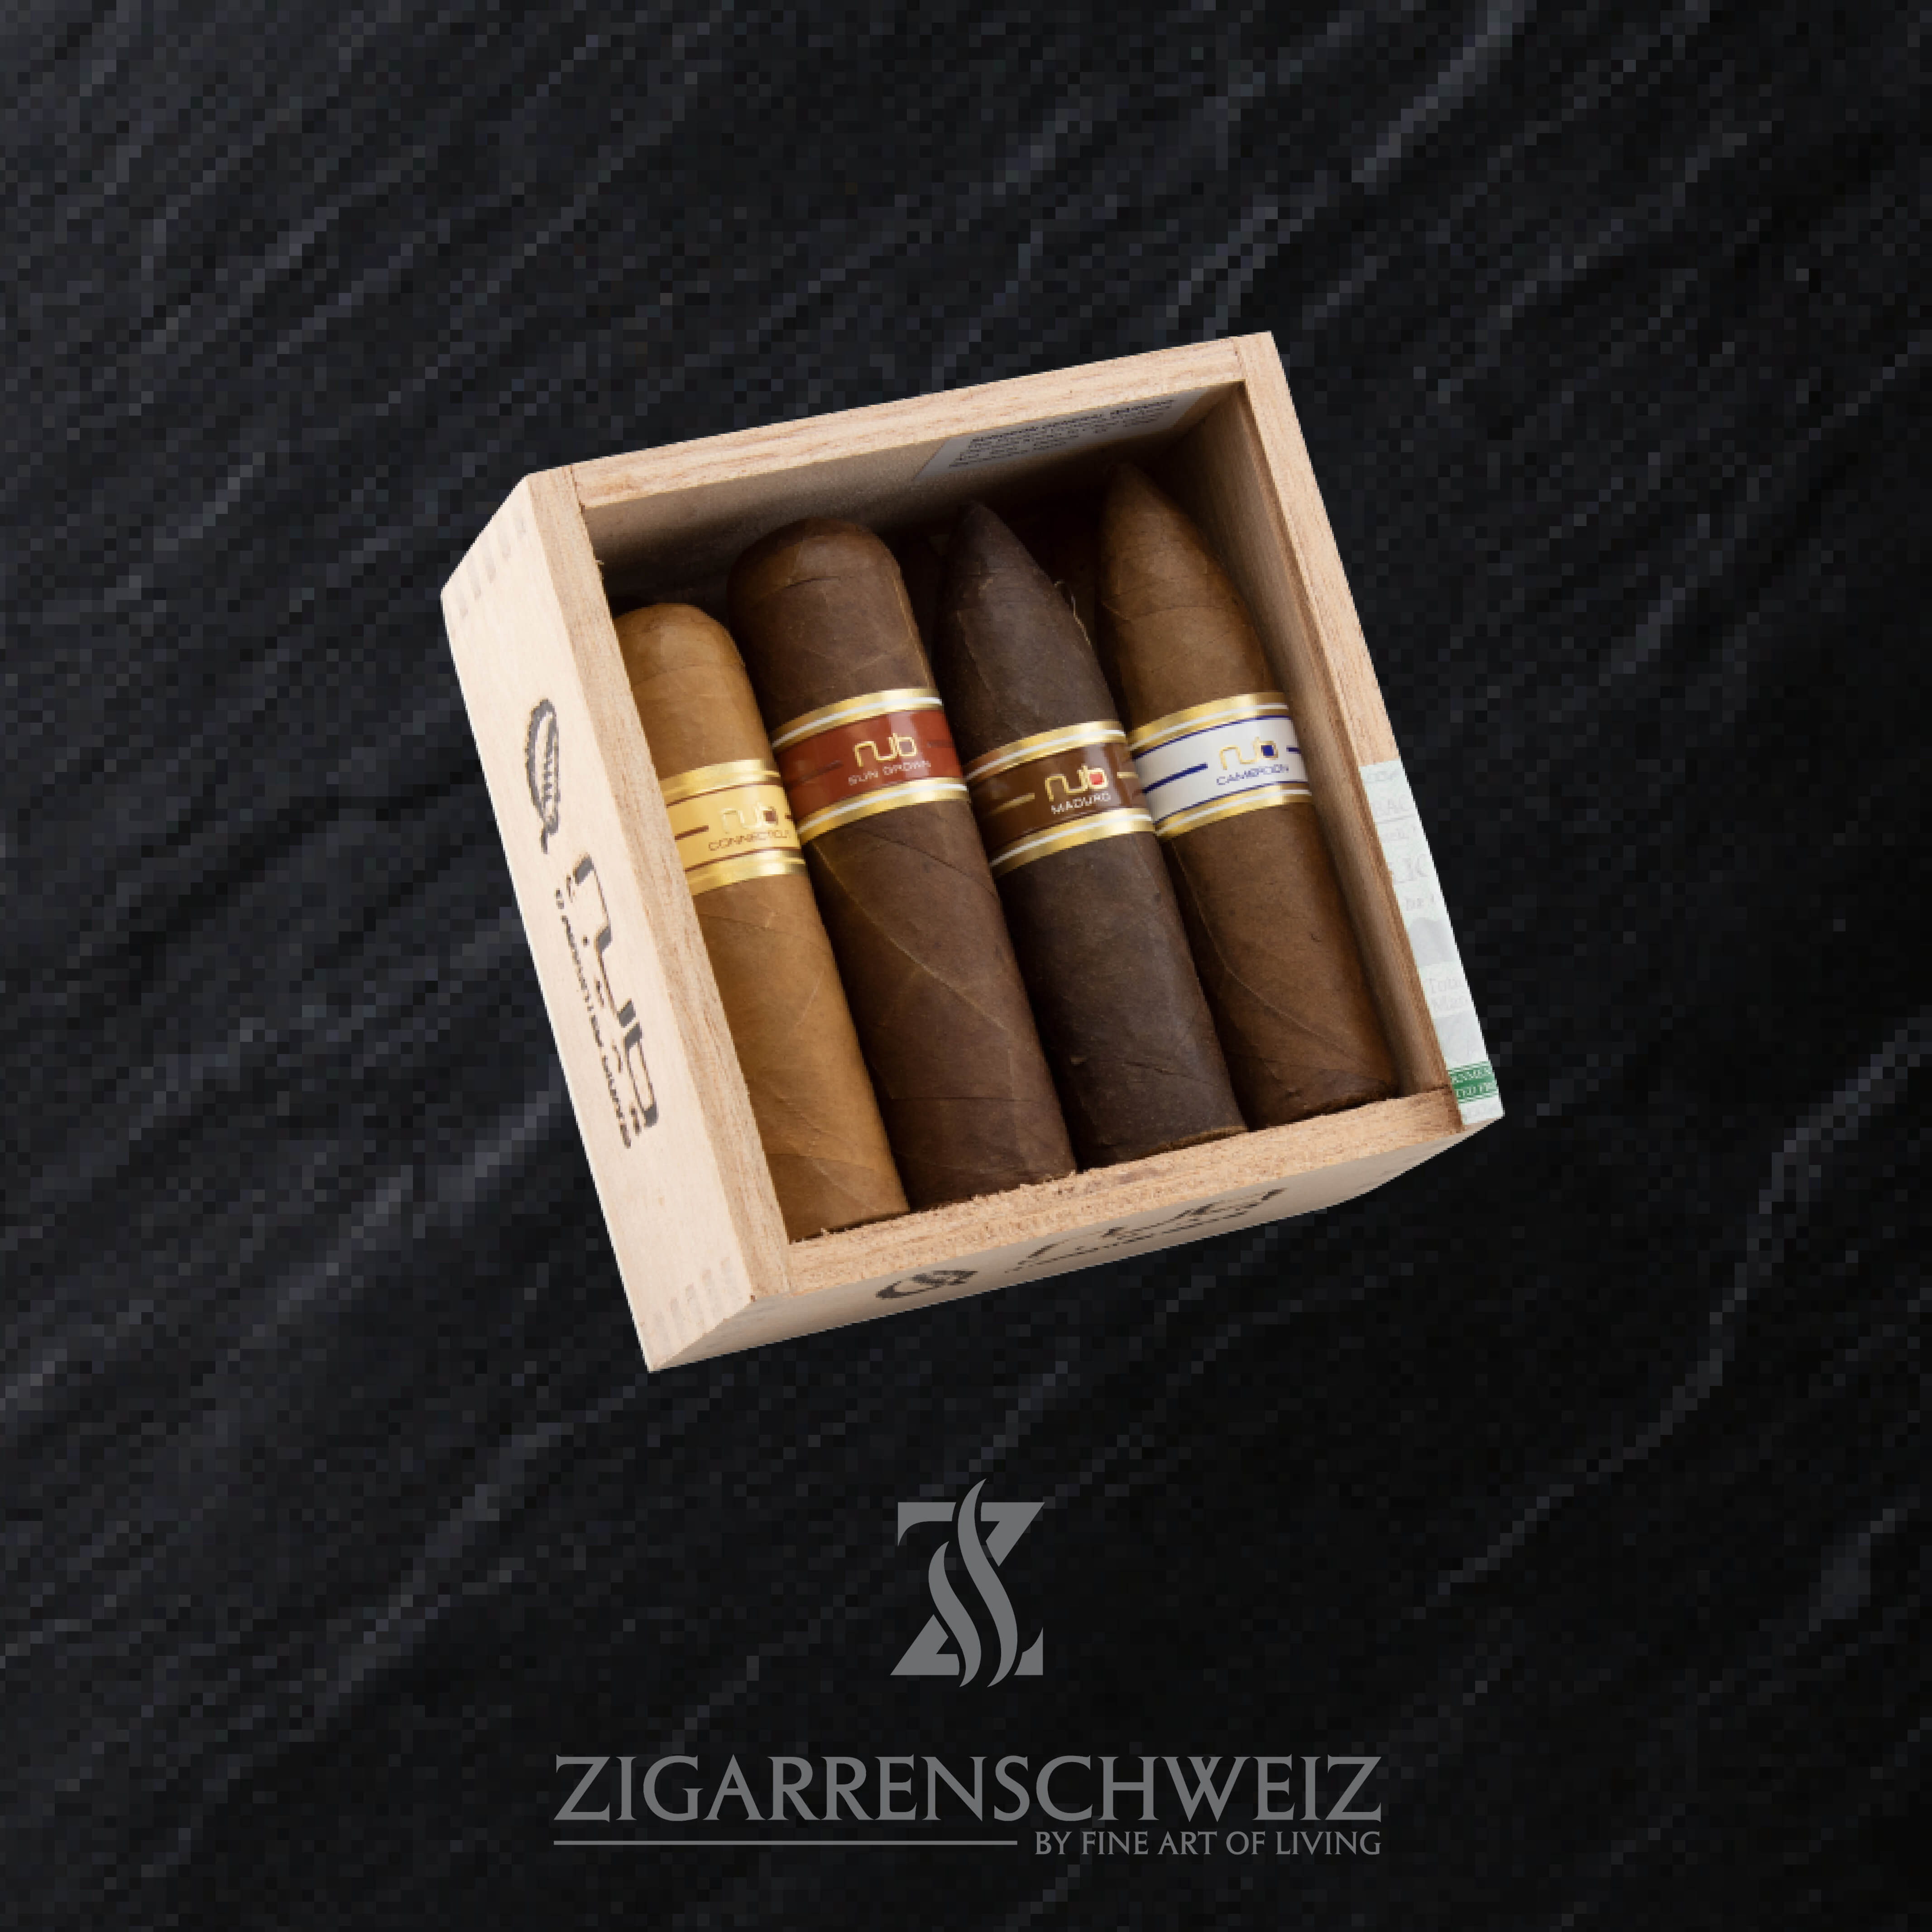 Best of NUB Zigarren Sampler aus dem Hause Oliva